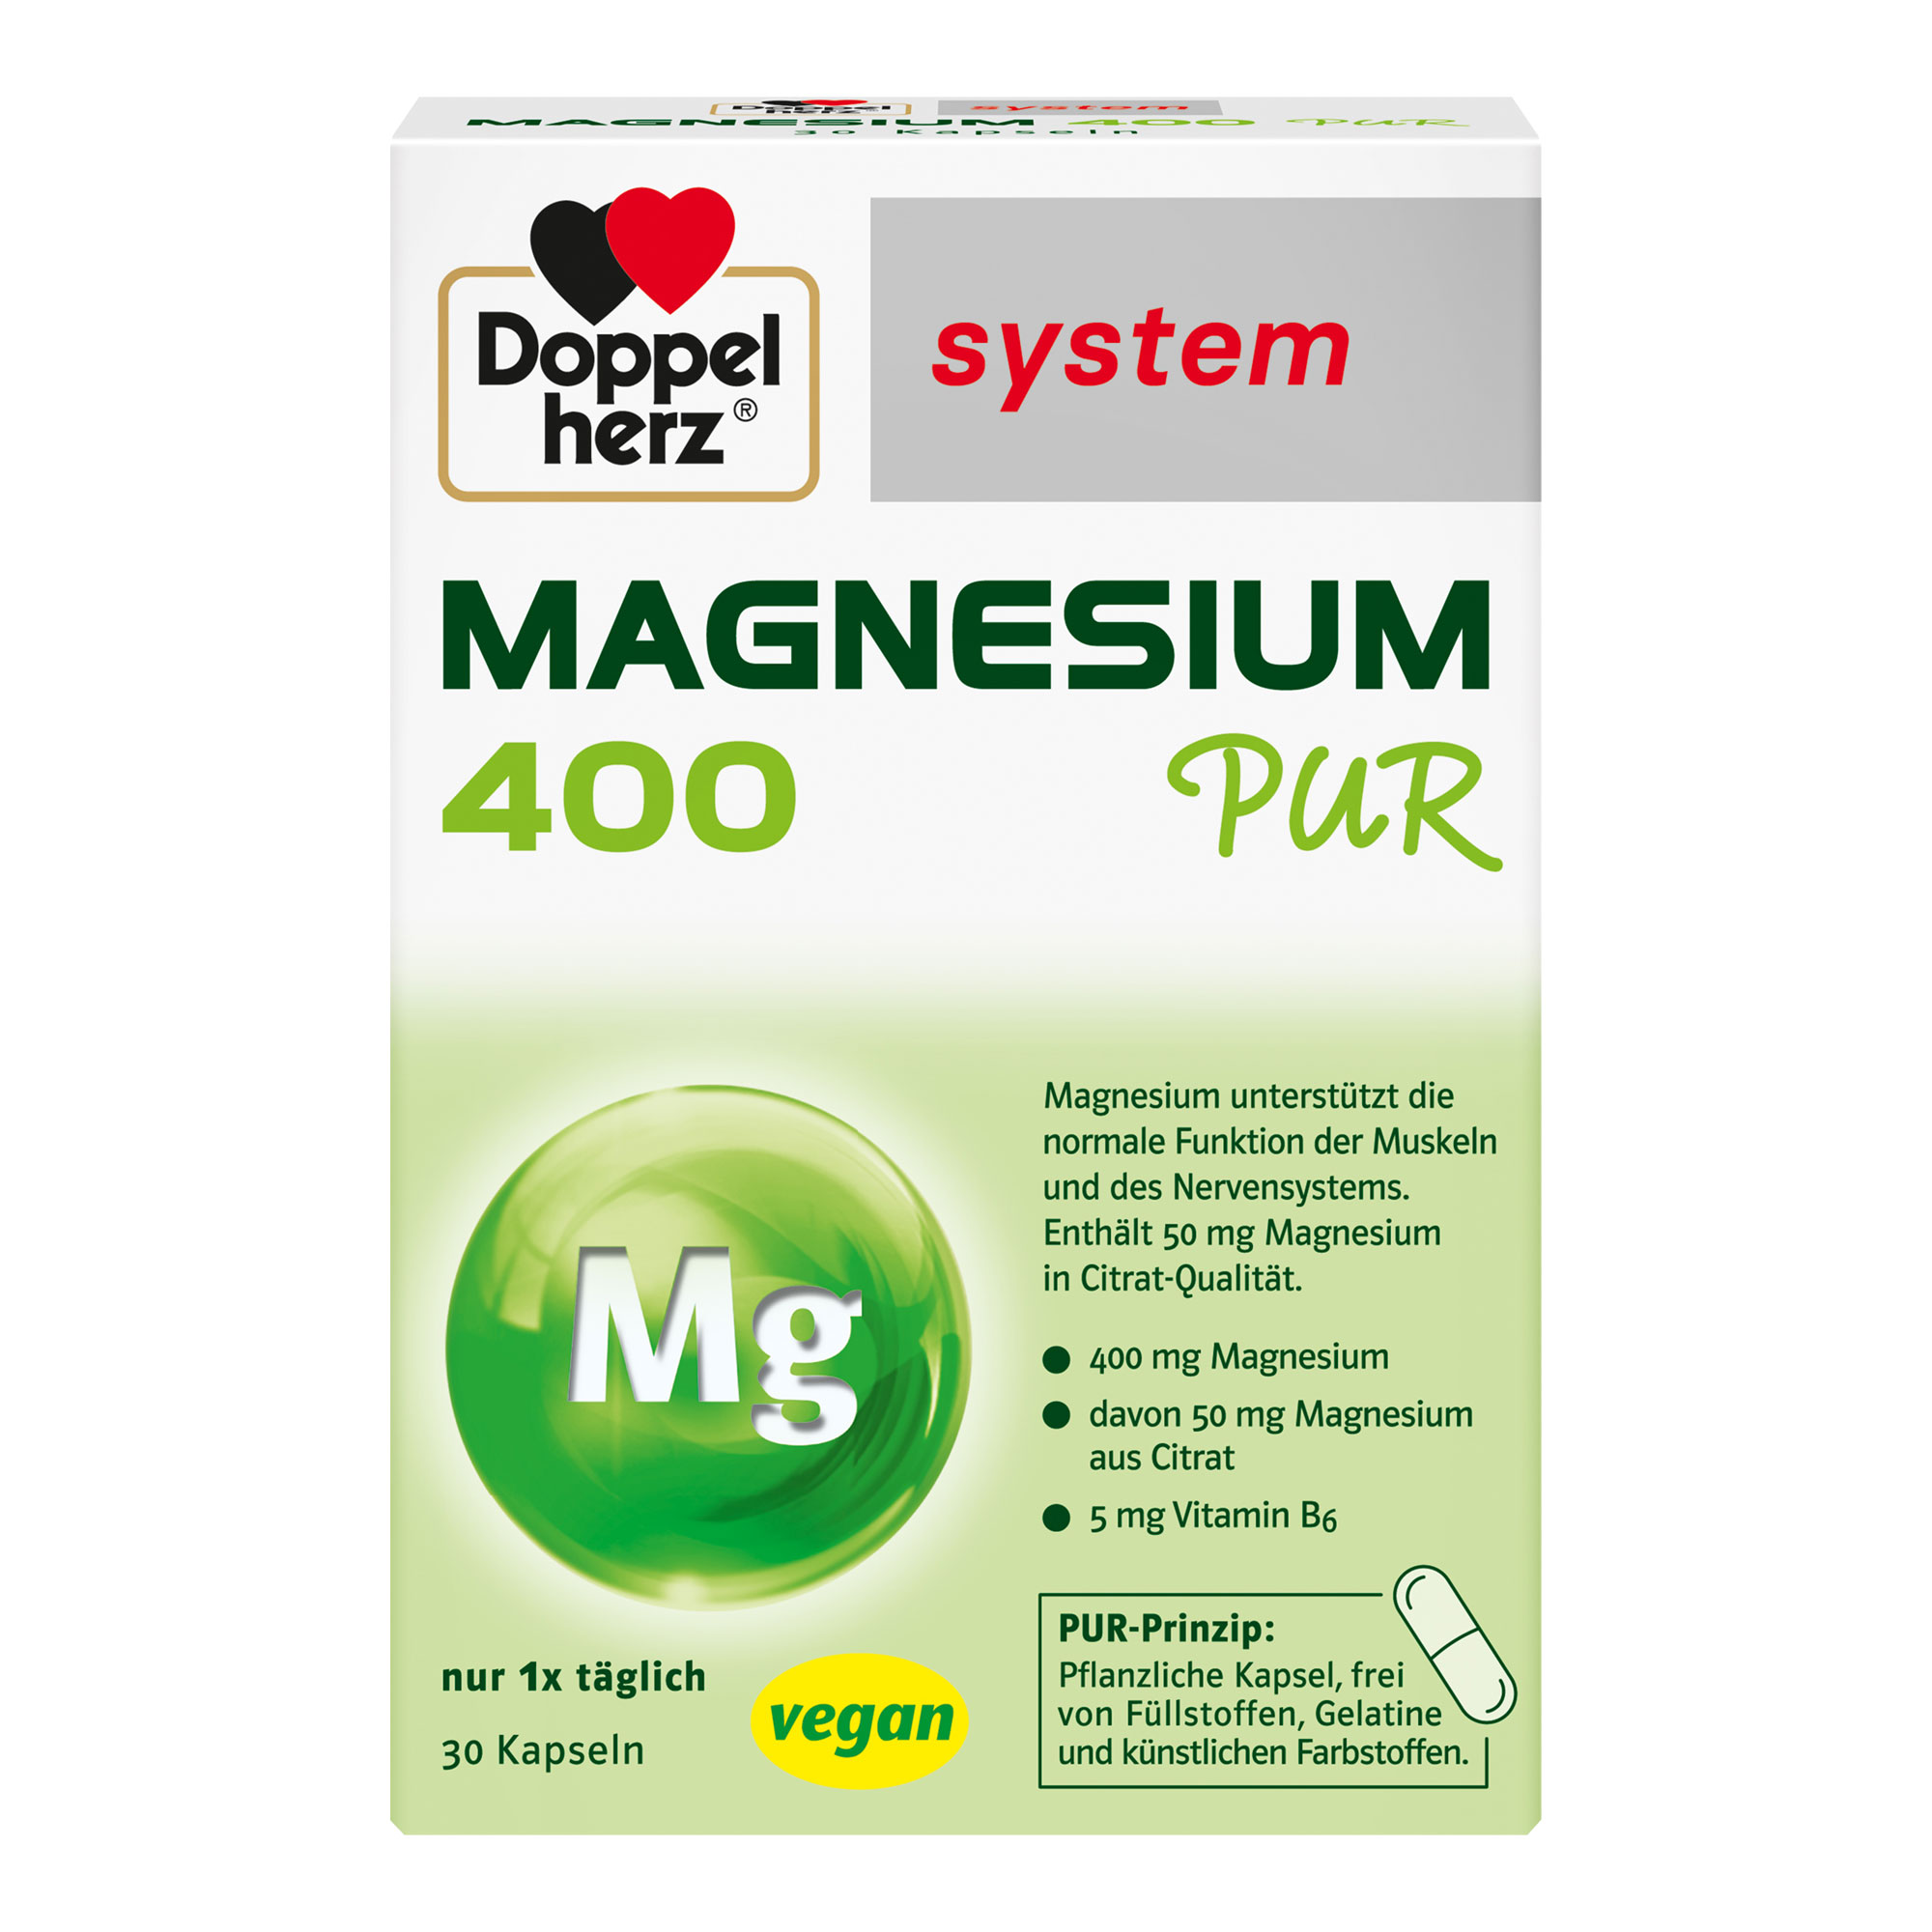 Nahrungsergänzungsmittel mit Magnesium und Vitamin B6 in Form einer pflanzlichen Kapsel.